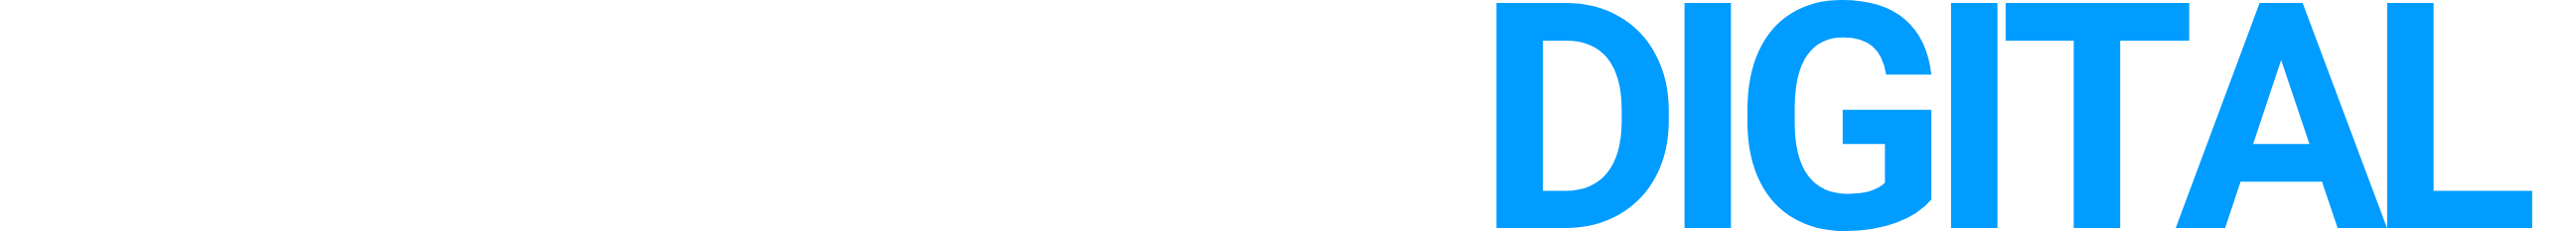 Club Deal Digital Logo